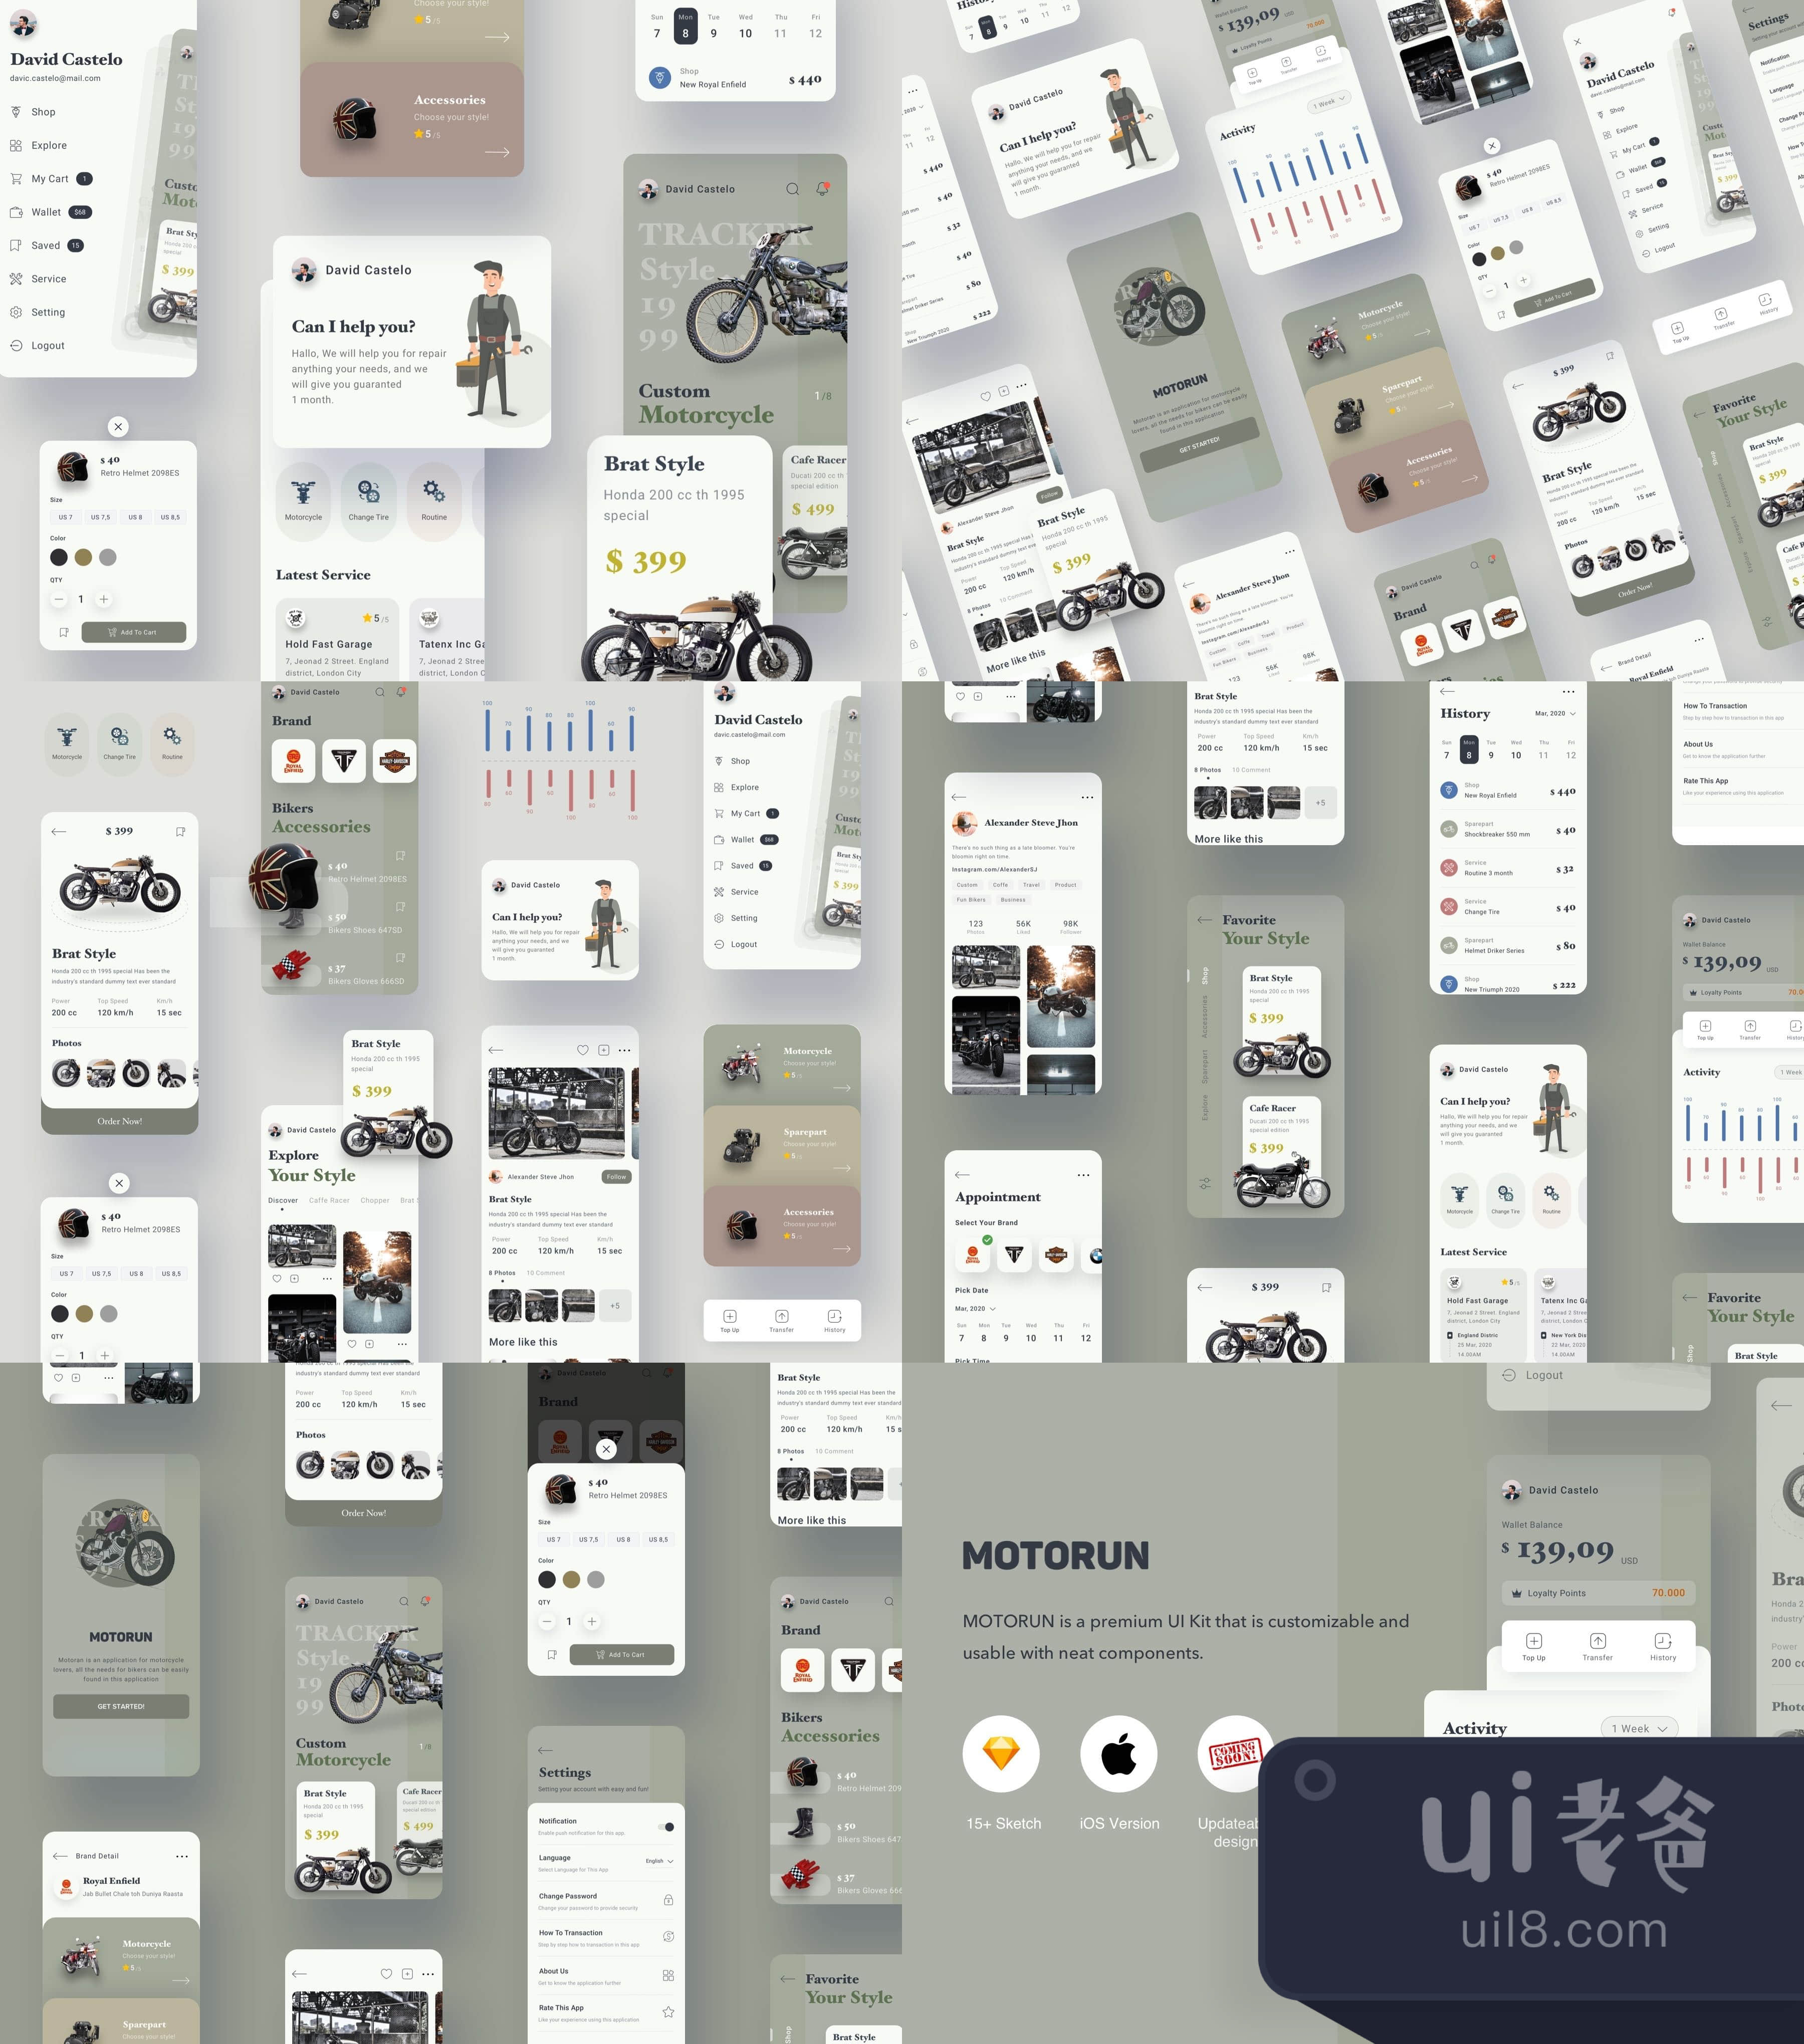 梦之城_梦之城娱乐_梦之城国际娱乐_梦之城国际娱乐平台UI套件 (Motorun UI Kit)插图